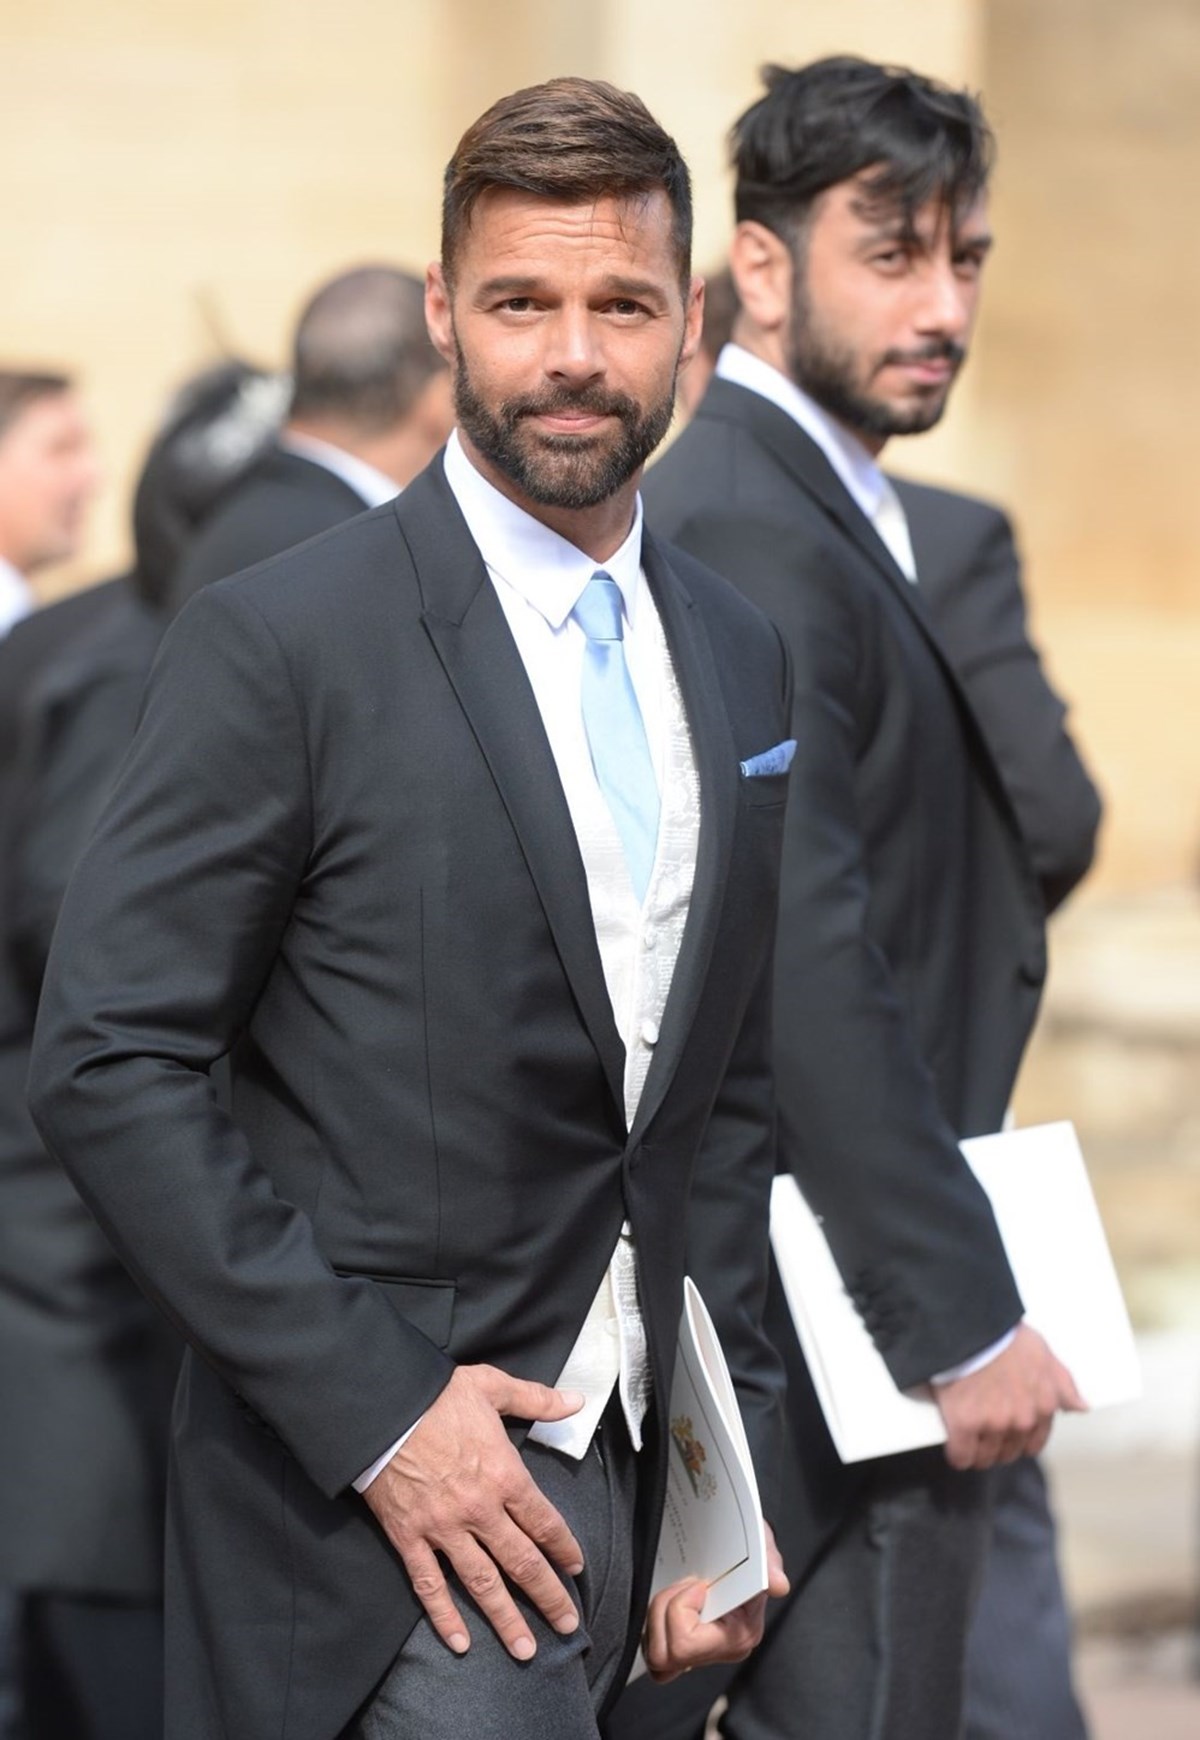 2010 yılında eşcinsel olduğunu açıklayan ve 2018'den bu yana Suriye doğumlu İsveçli ressam Jwan Yosef ile evli olan Ricky Martin'in taşıyıcı anneden dünyaya gelen dört çocuğu var.